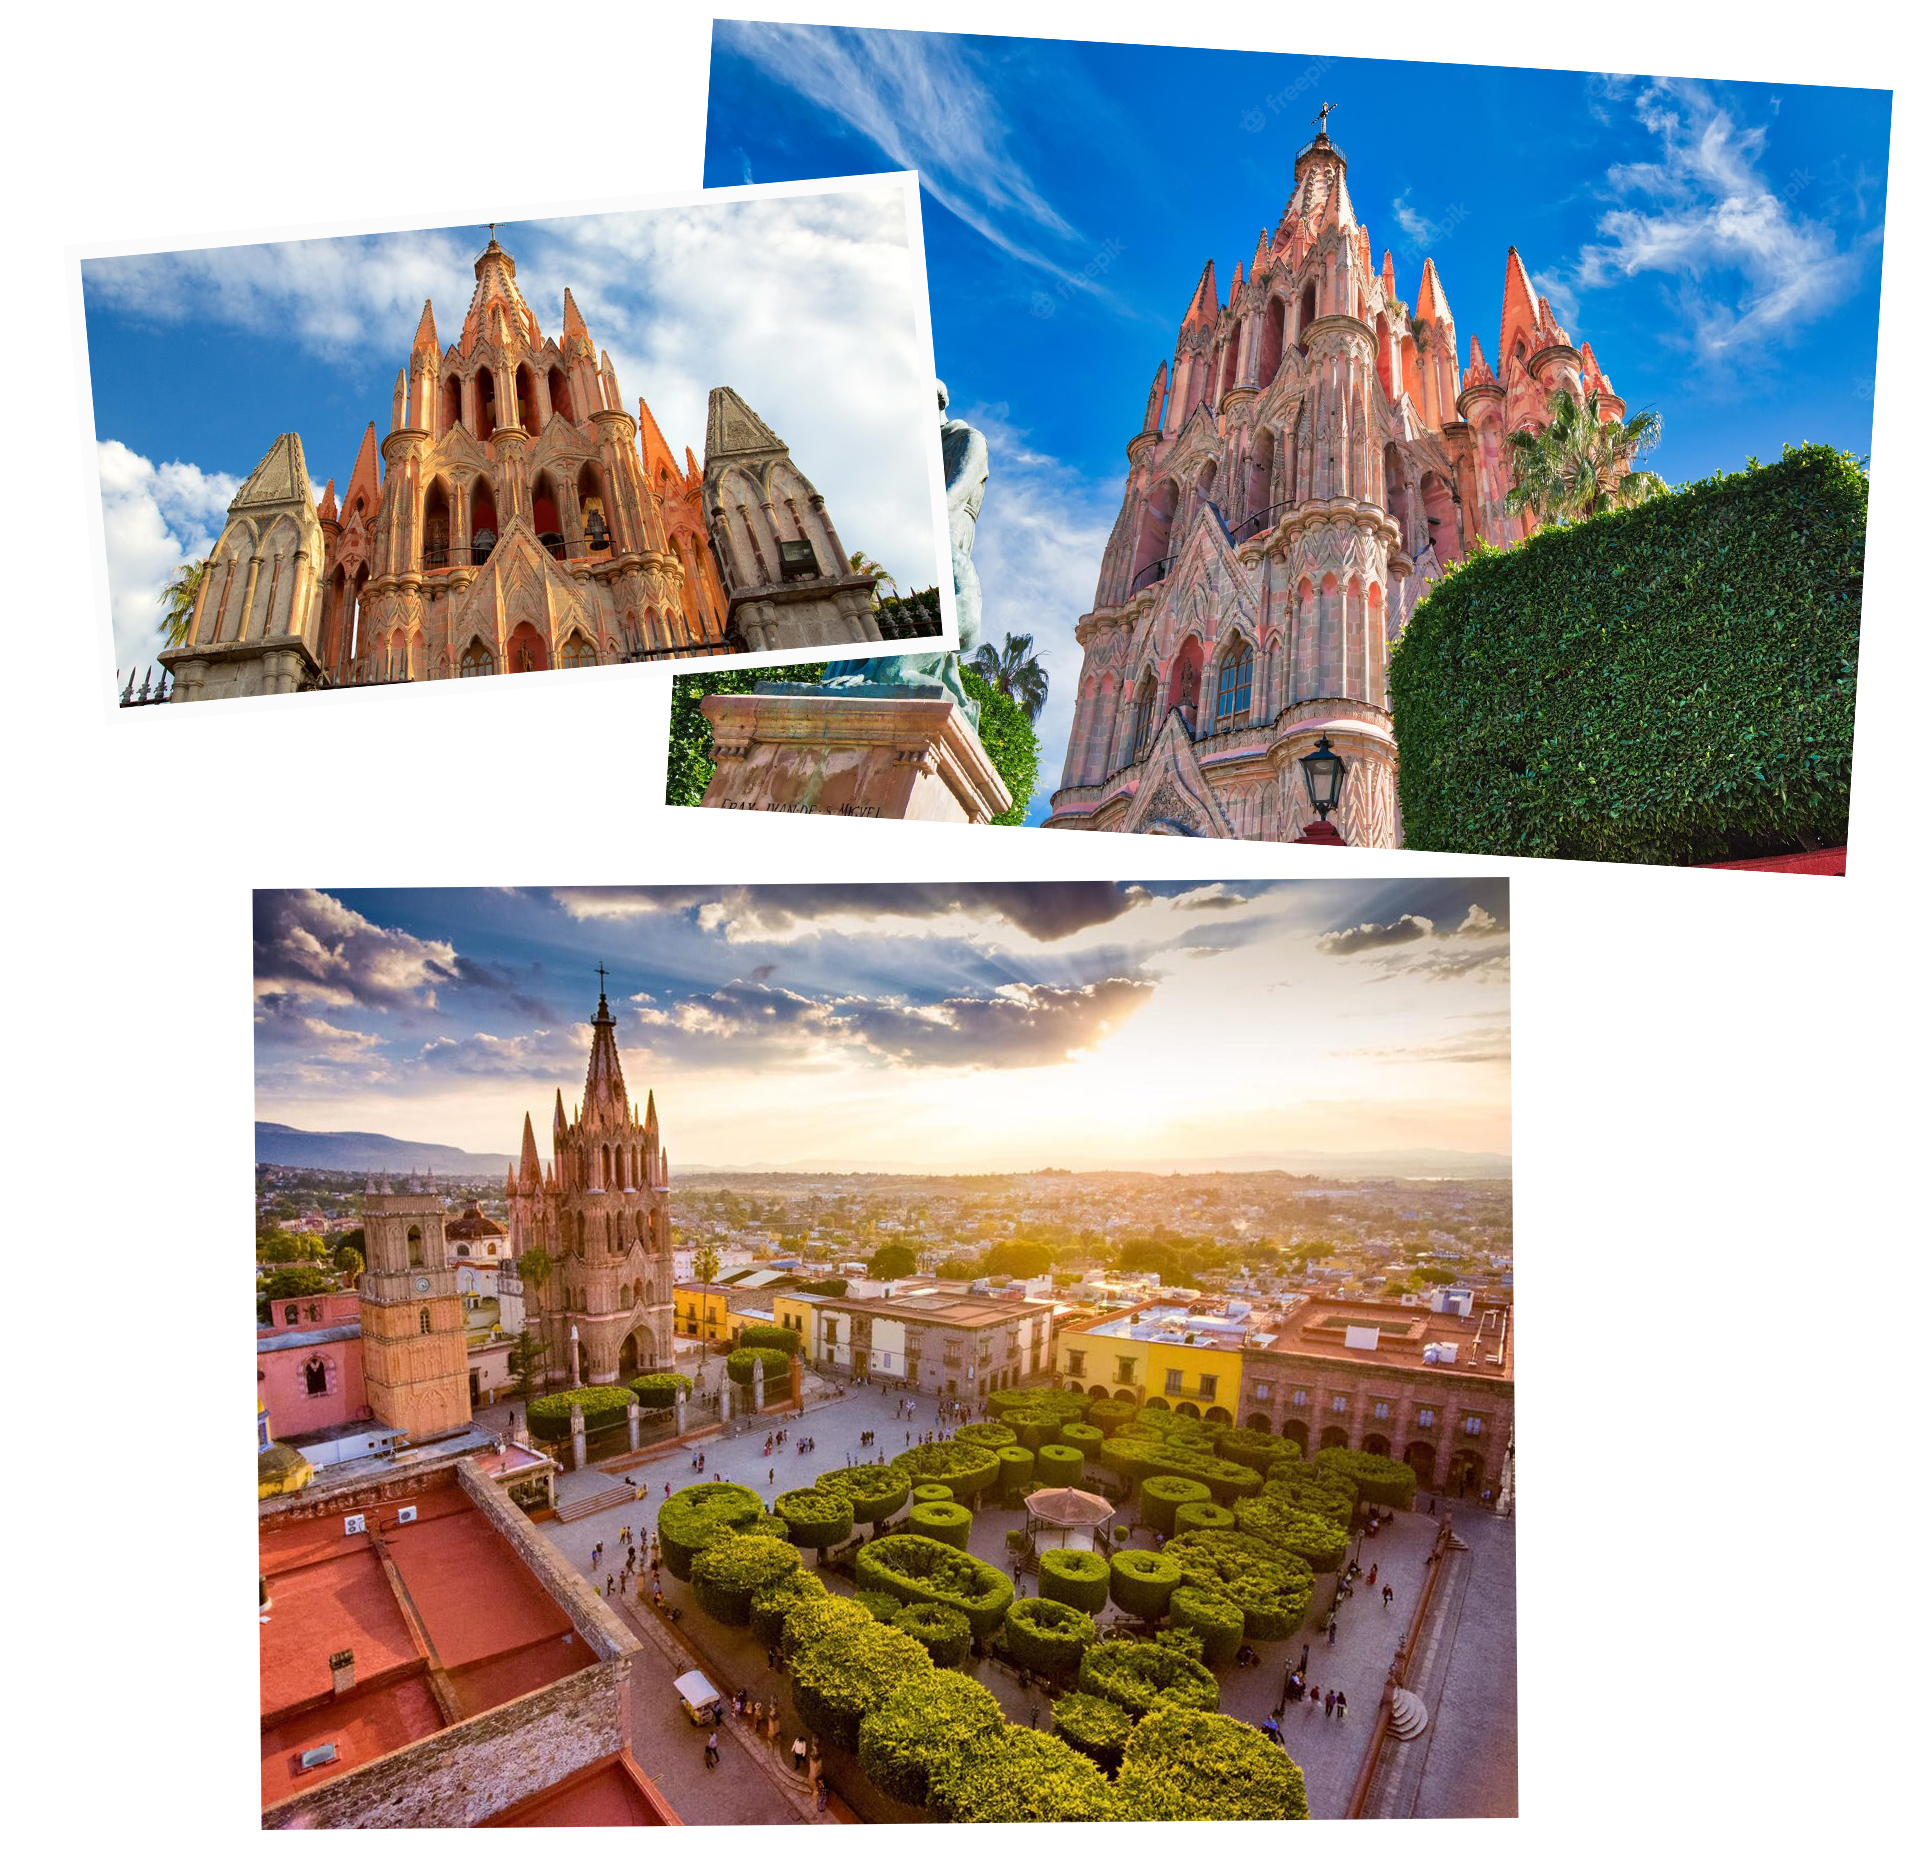 Chiêm ngưỡng thành phố cổ kính đẹp lộng lẫy ở Mexico - 4